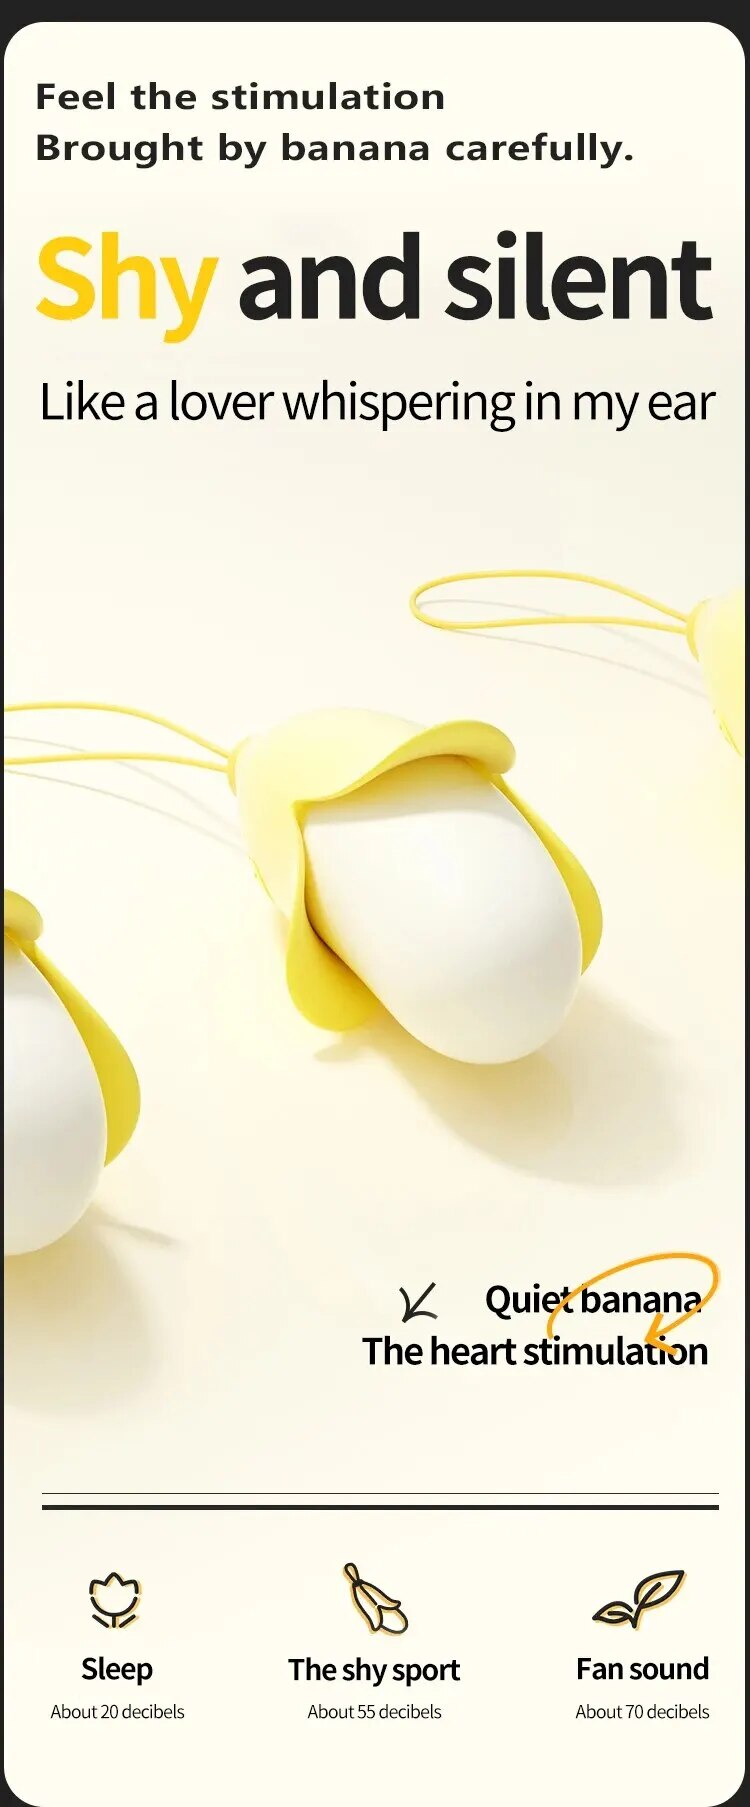 Kho sỉ Trứng rung mini nhỏ gọn hình quả chuối vàng silicon siêu mềm giá tốt